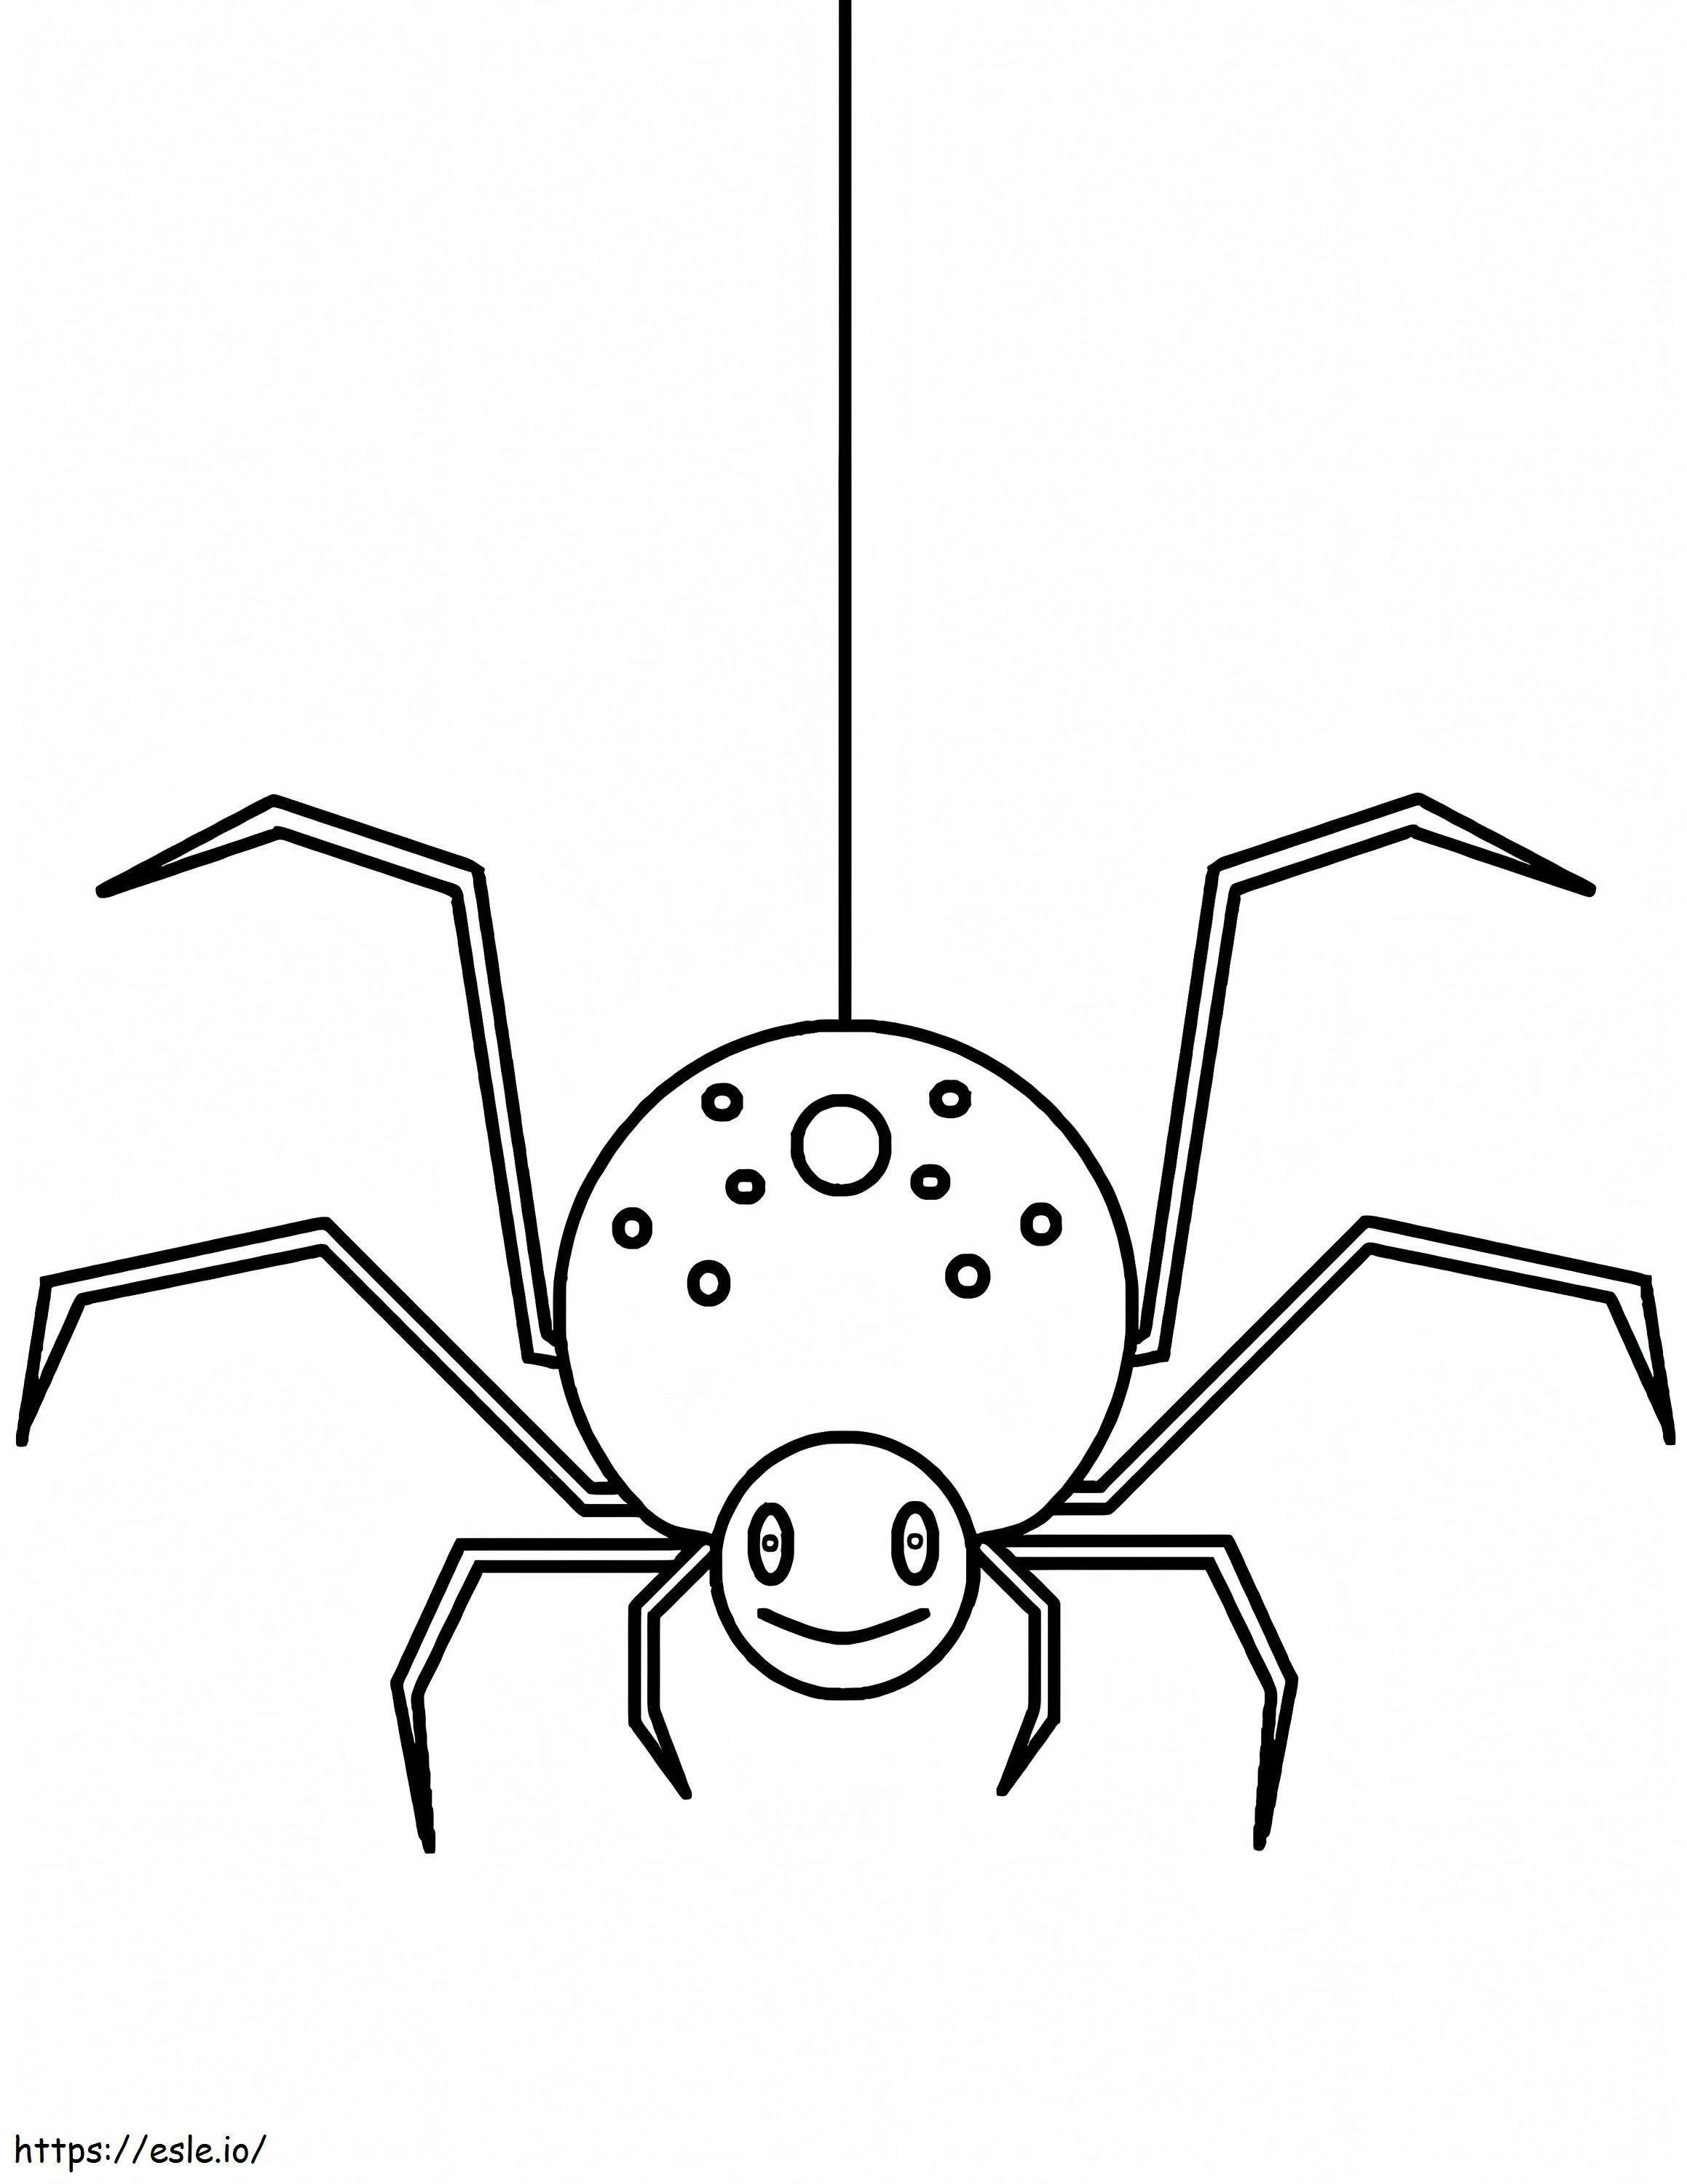 Coloriage Araignée facile à imprimer dessin